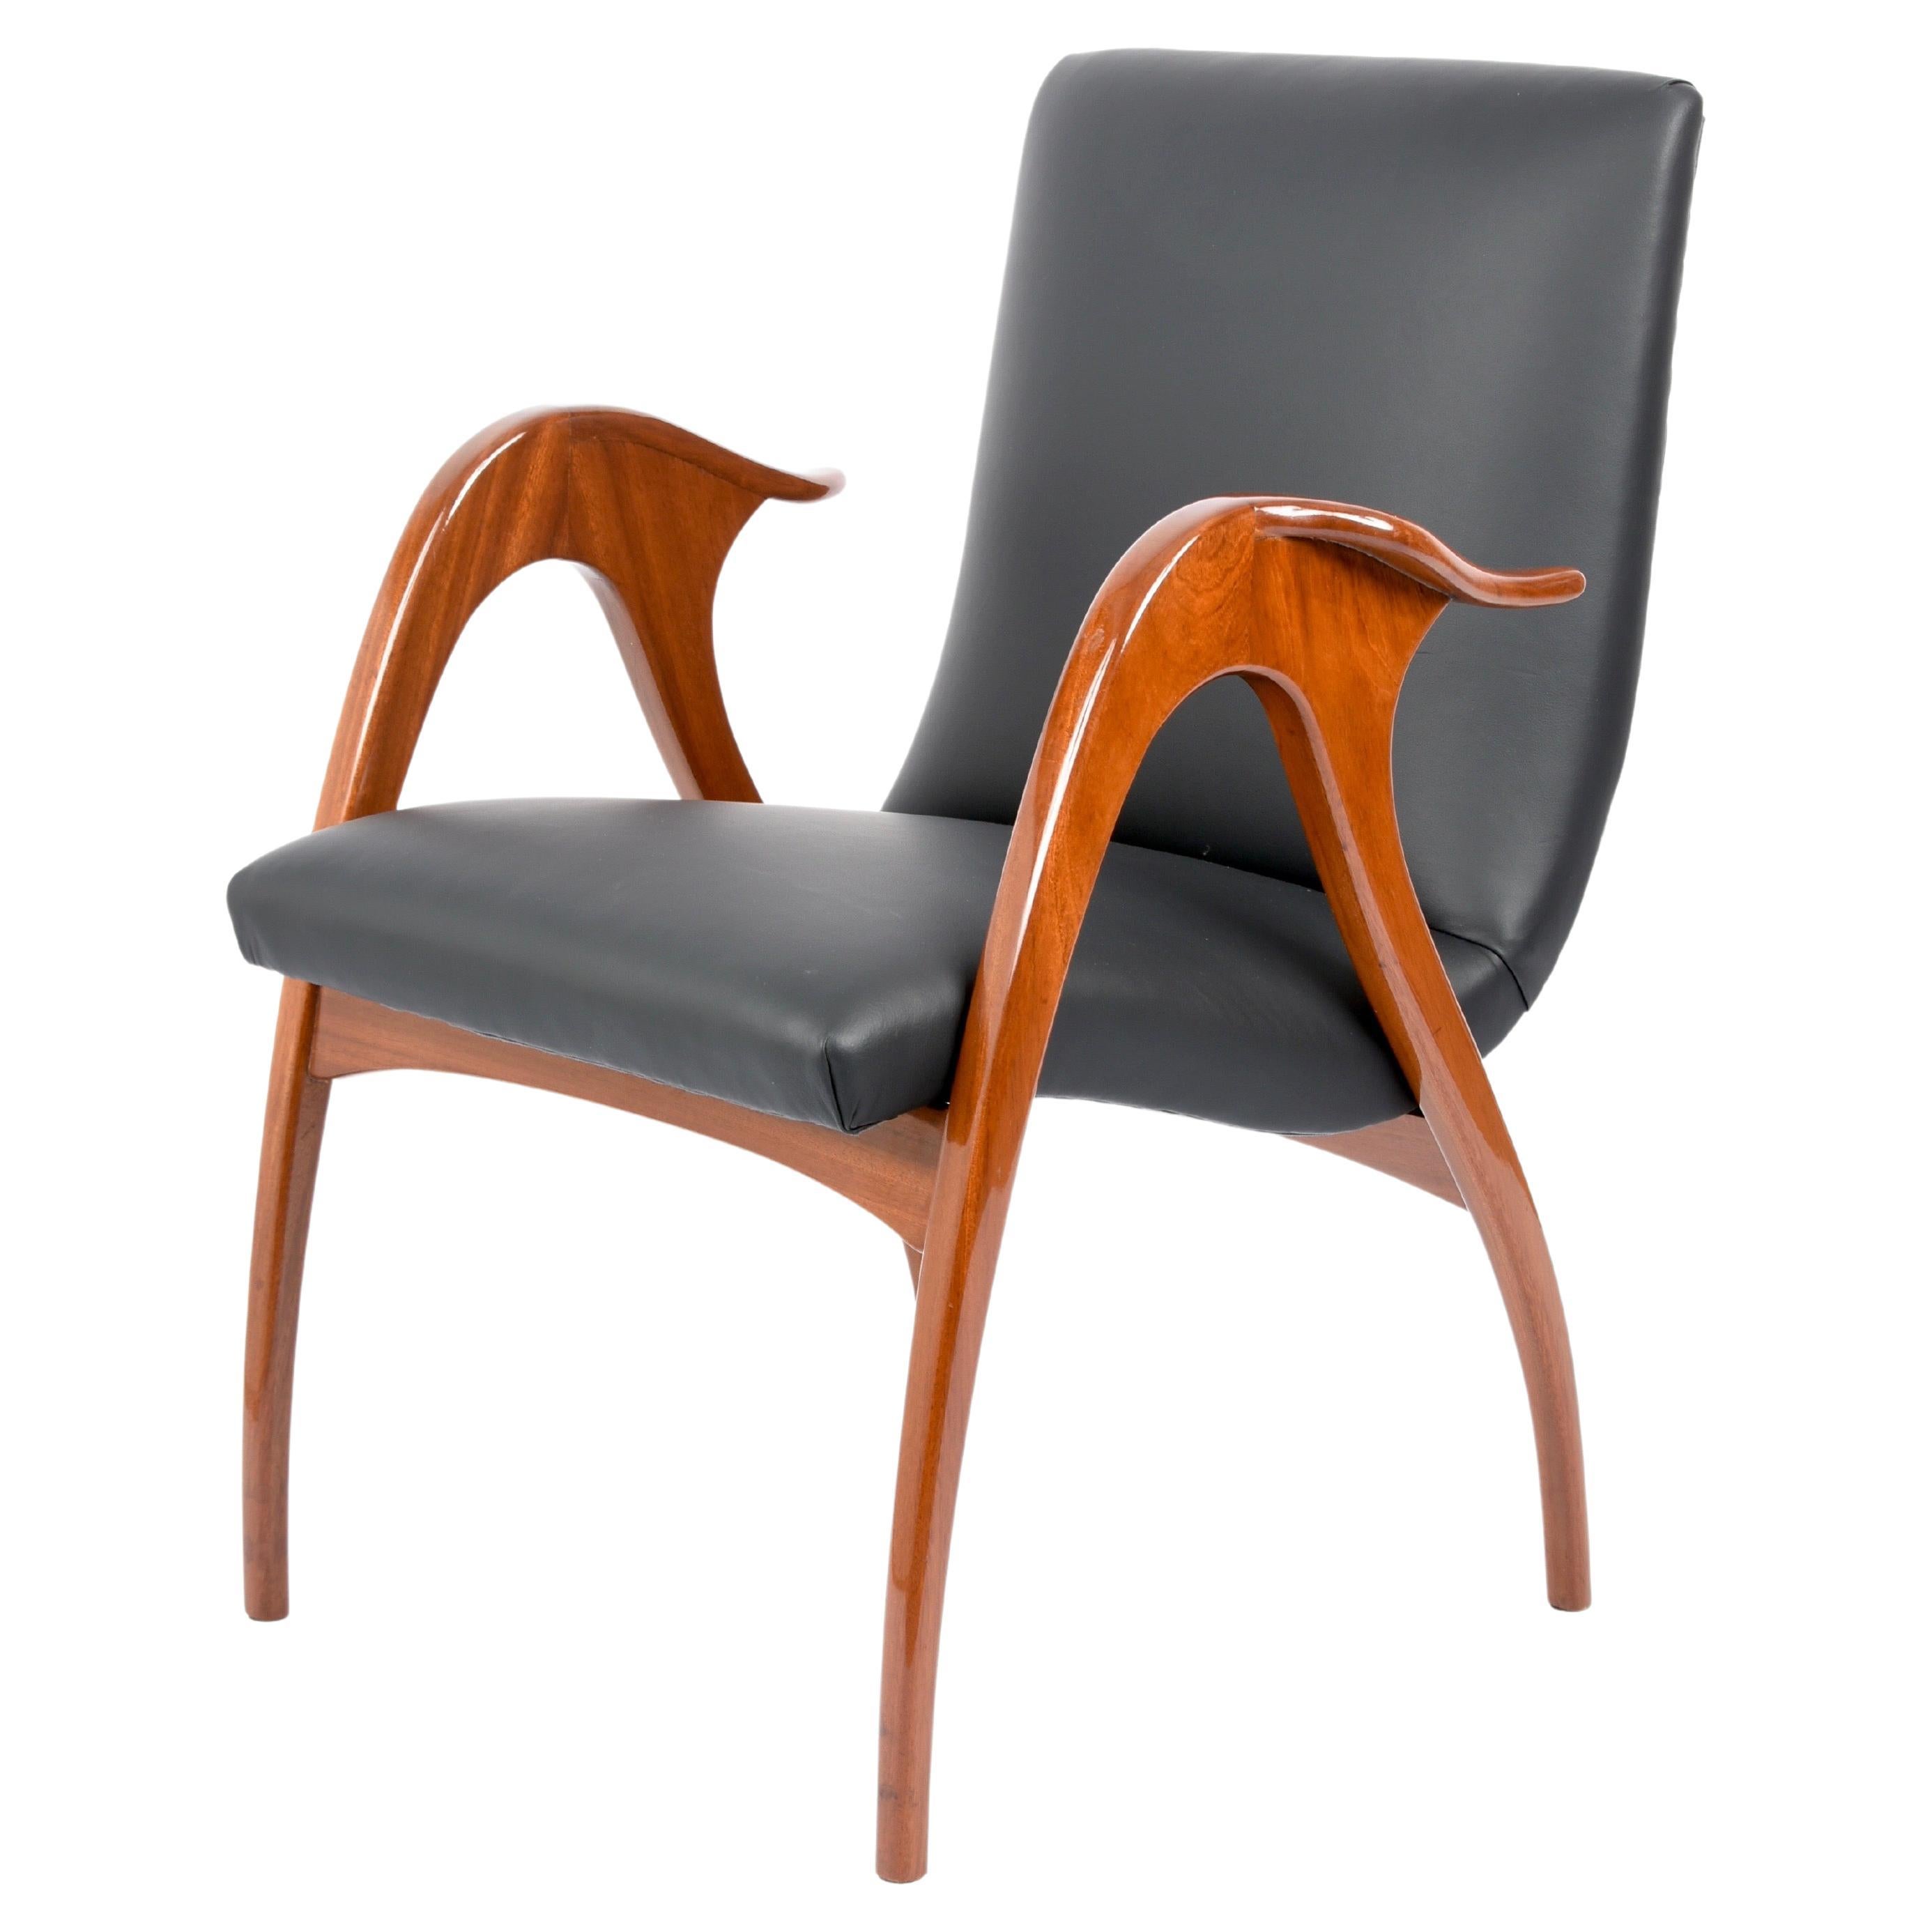 Incroyable fauteuil du milieu du siècle en noyer et cuir noir. Cette pièce fantastique a été conçue par Malatesta & Mason et produite en Italie durant la première moitié des années 1950. 

Le fauteuil a été professionnellement restauré avec du